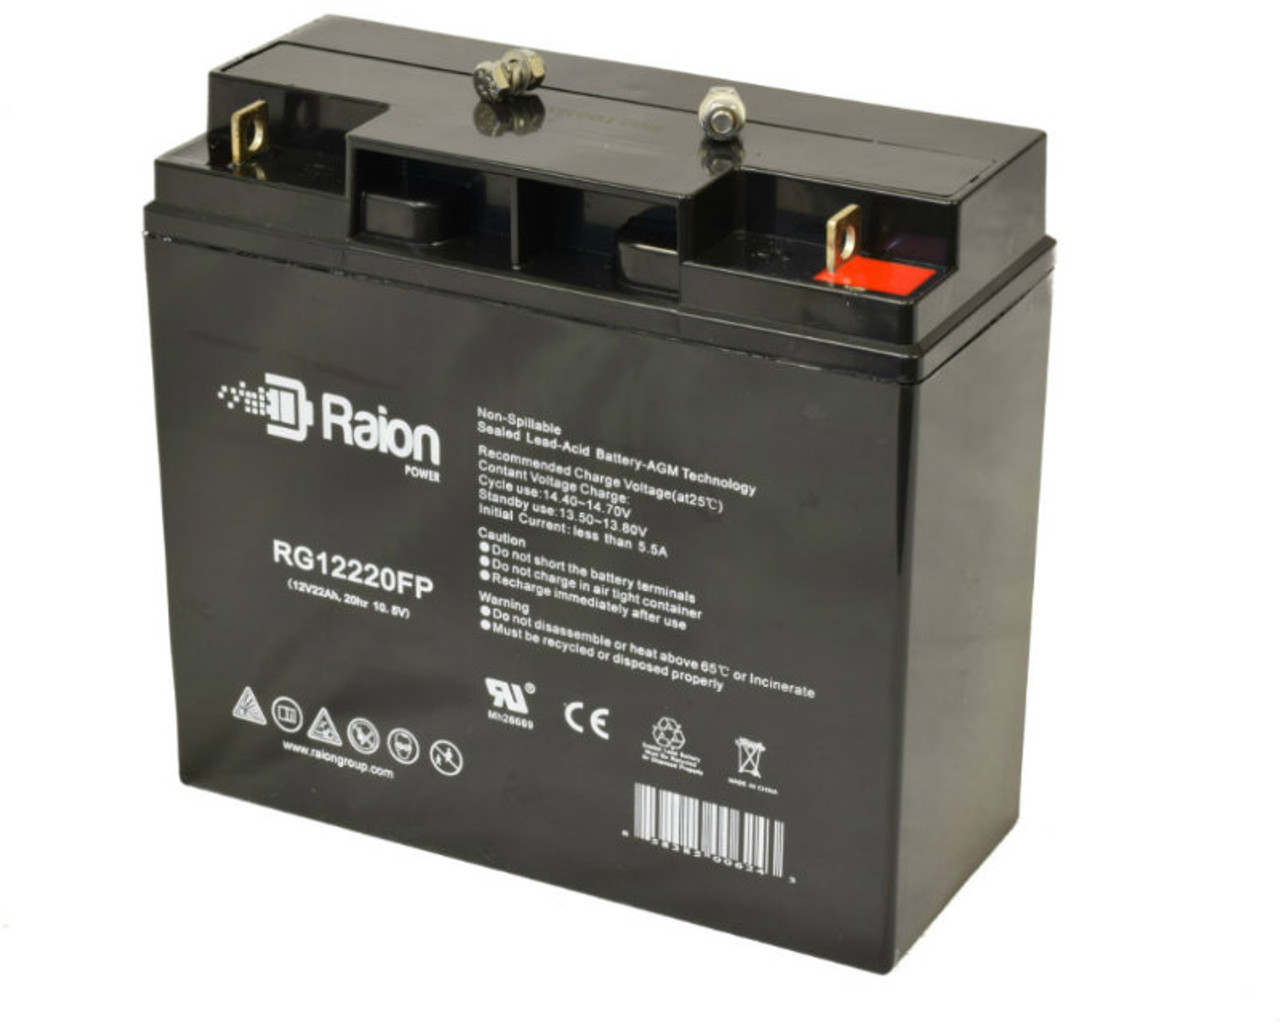 Raion Power RG12220FP 12V 22Ah Lead Acid Battery for TLV12220D